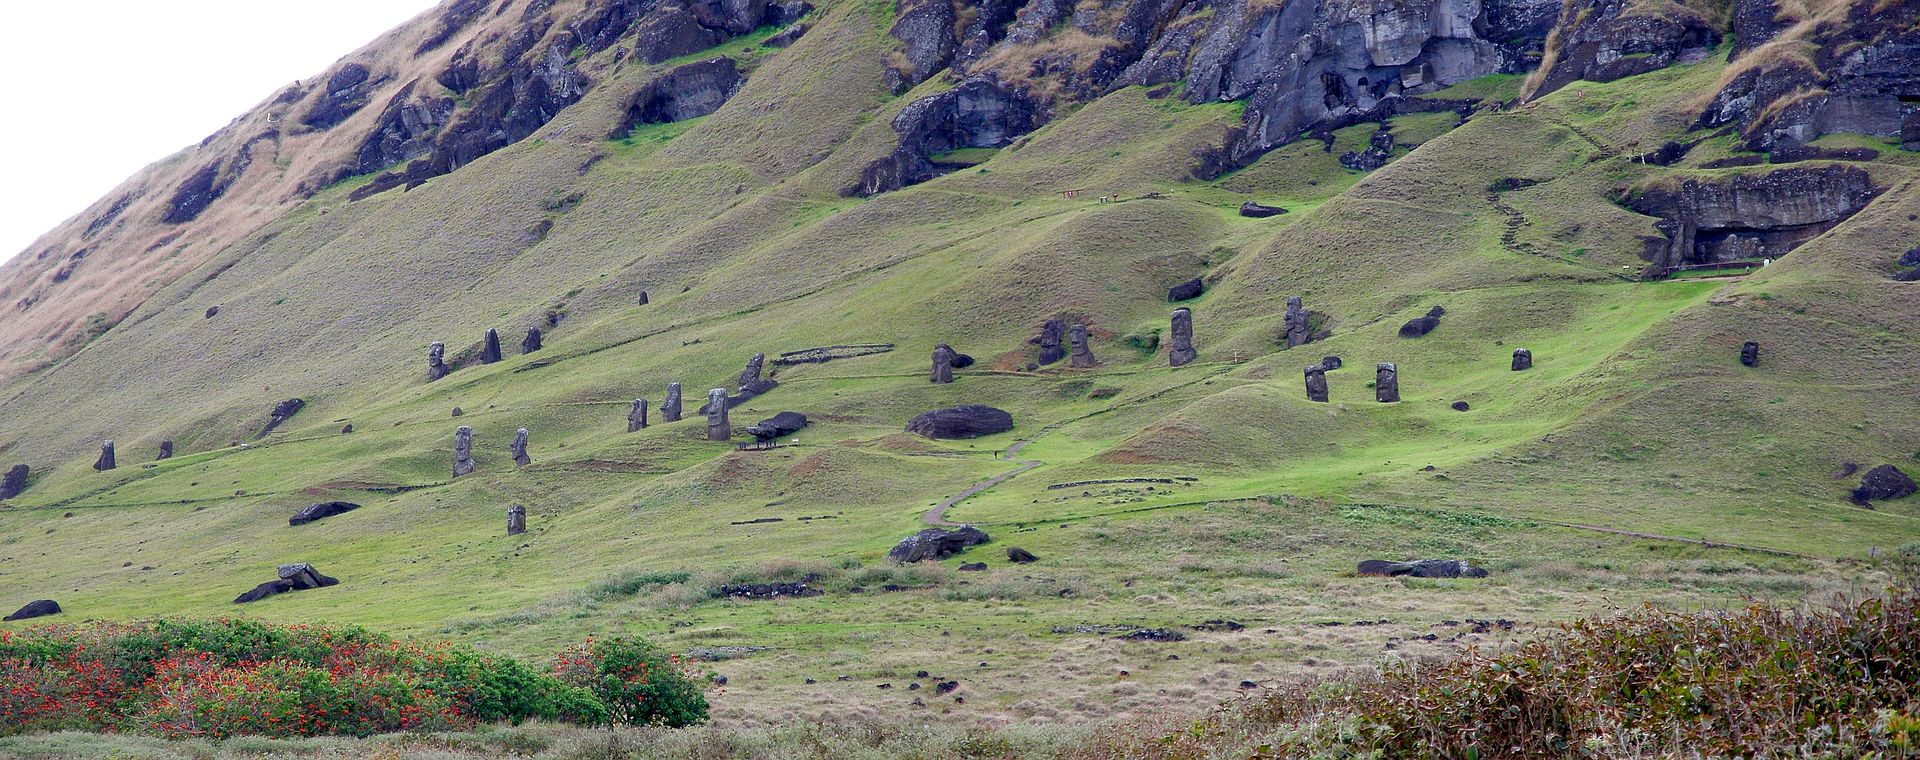 Odlesněná krajina Velikonočního ostrova foto z roku 2014. Kredit: Dropus, Wikipedia.